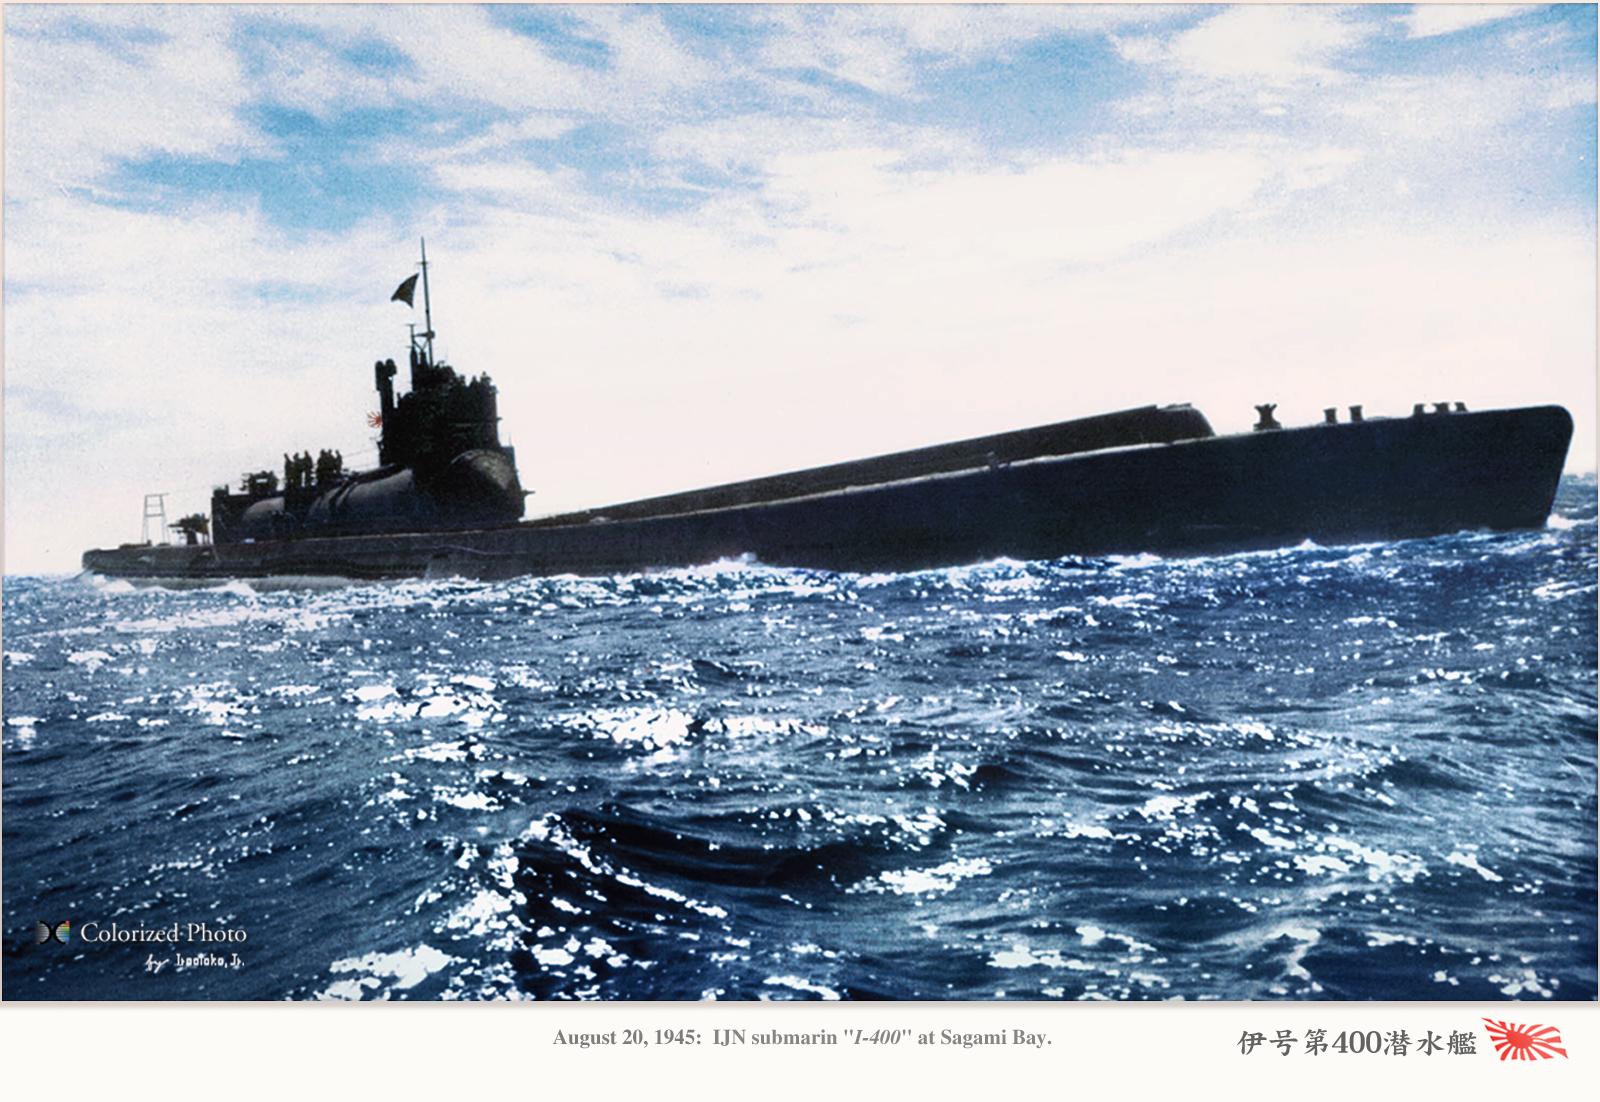 伊400型潜水艦 image - Yamato1945 - ModDB